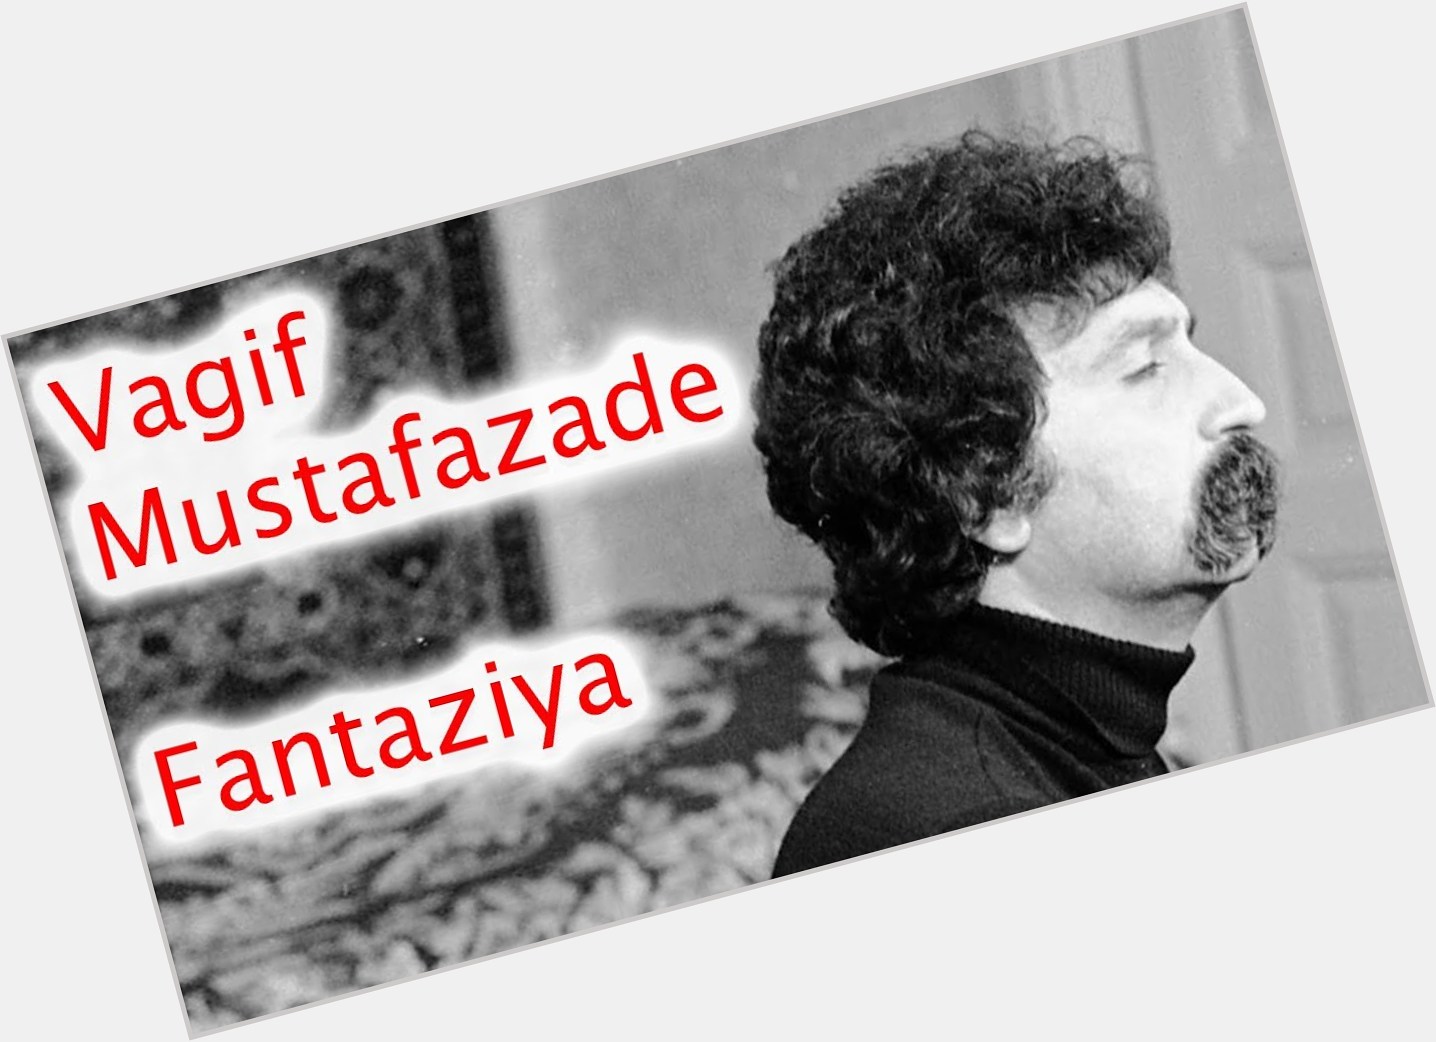 Vagif Mustafazadeh dating 2